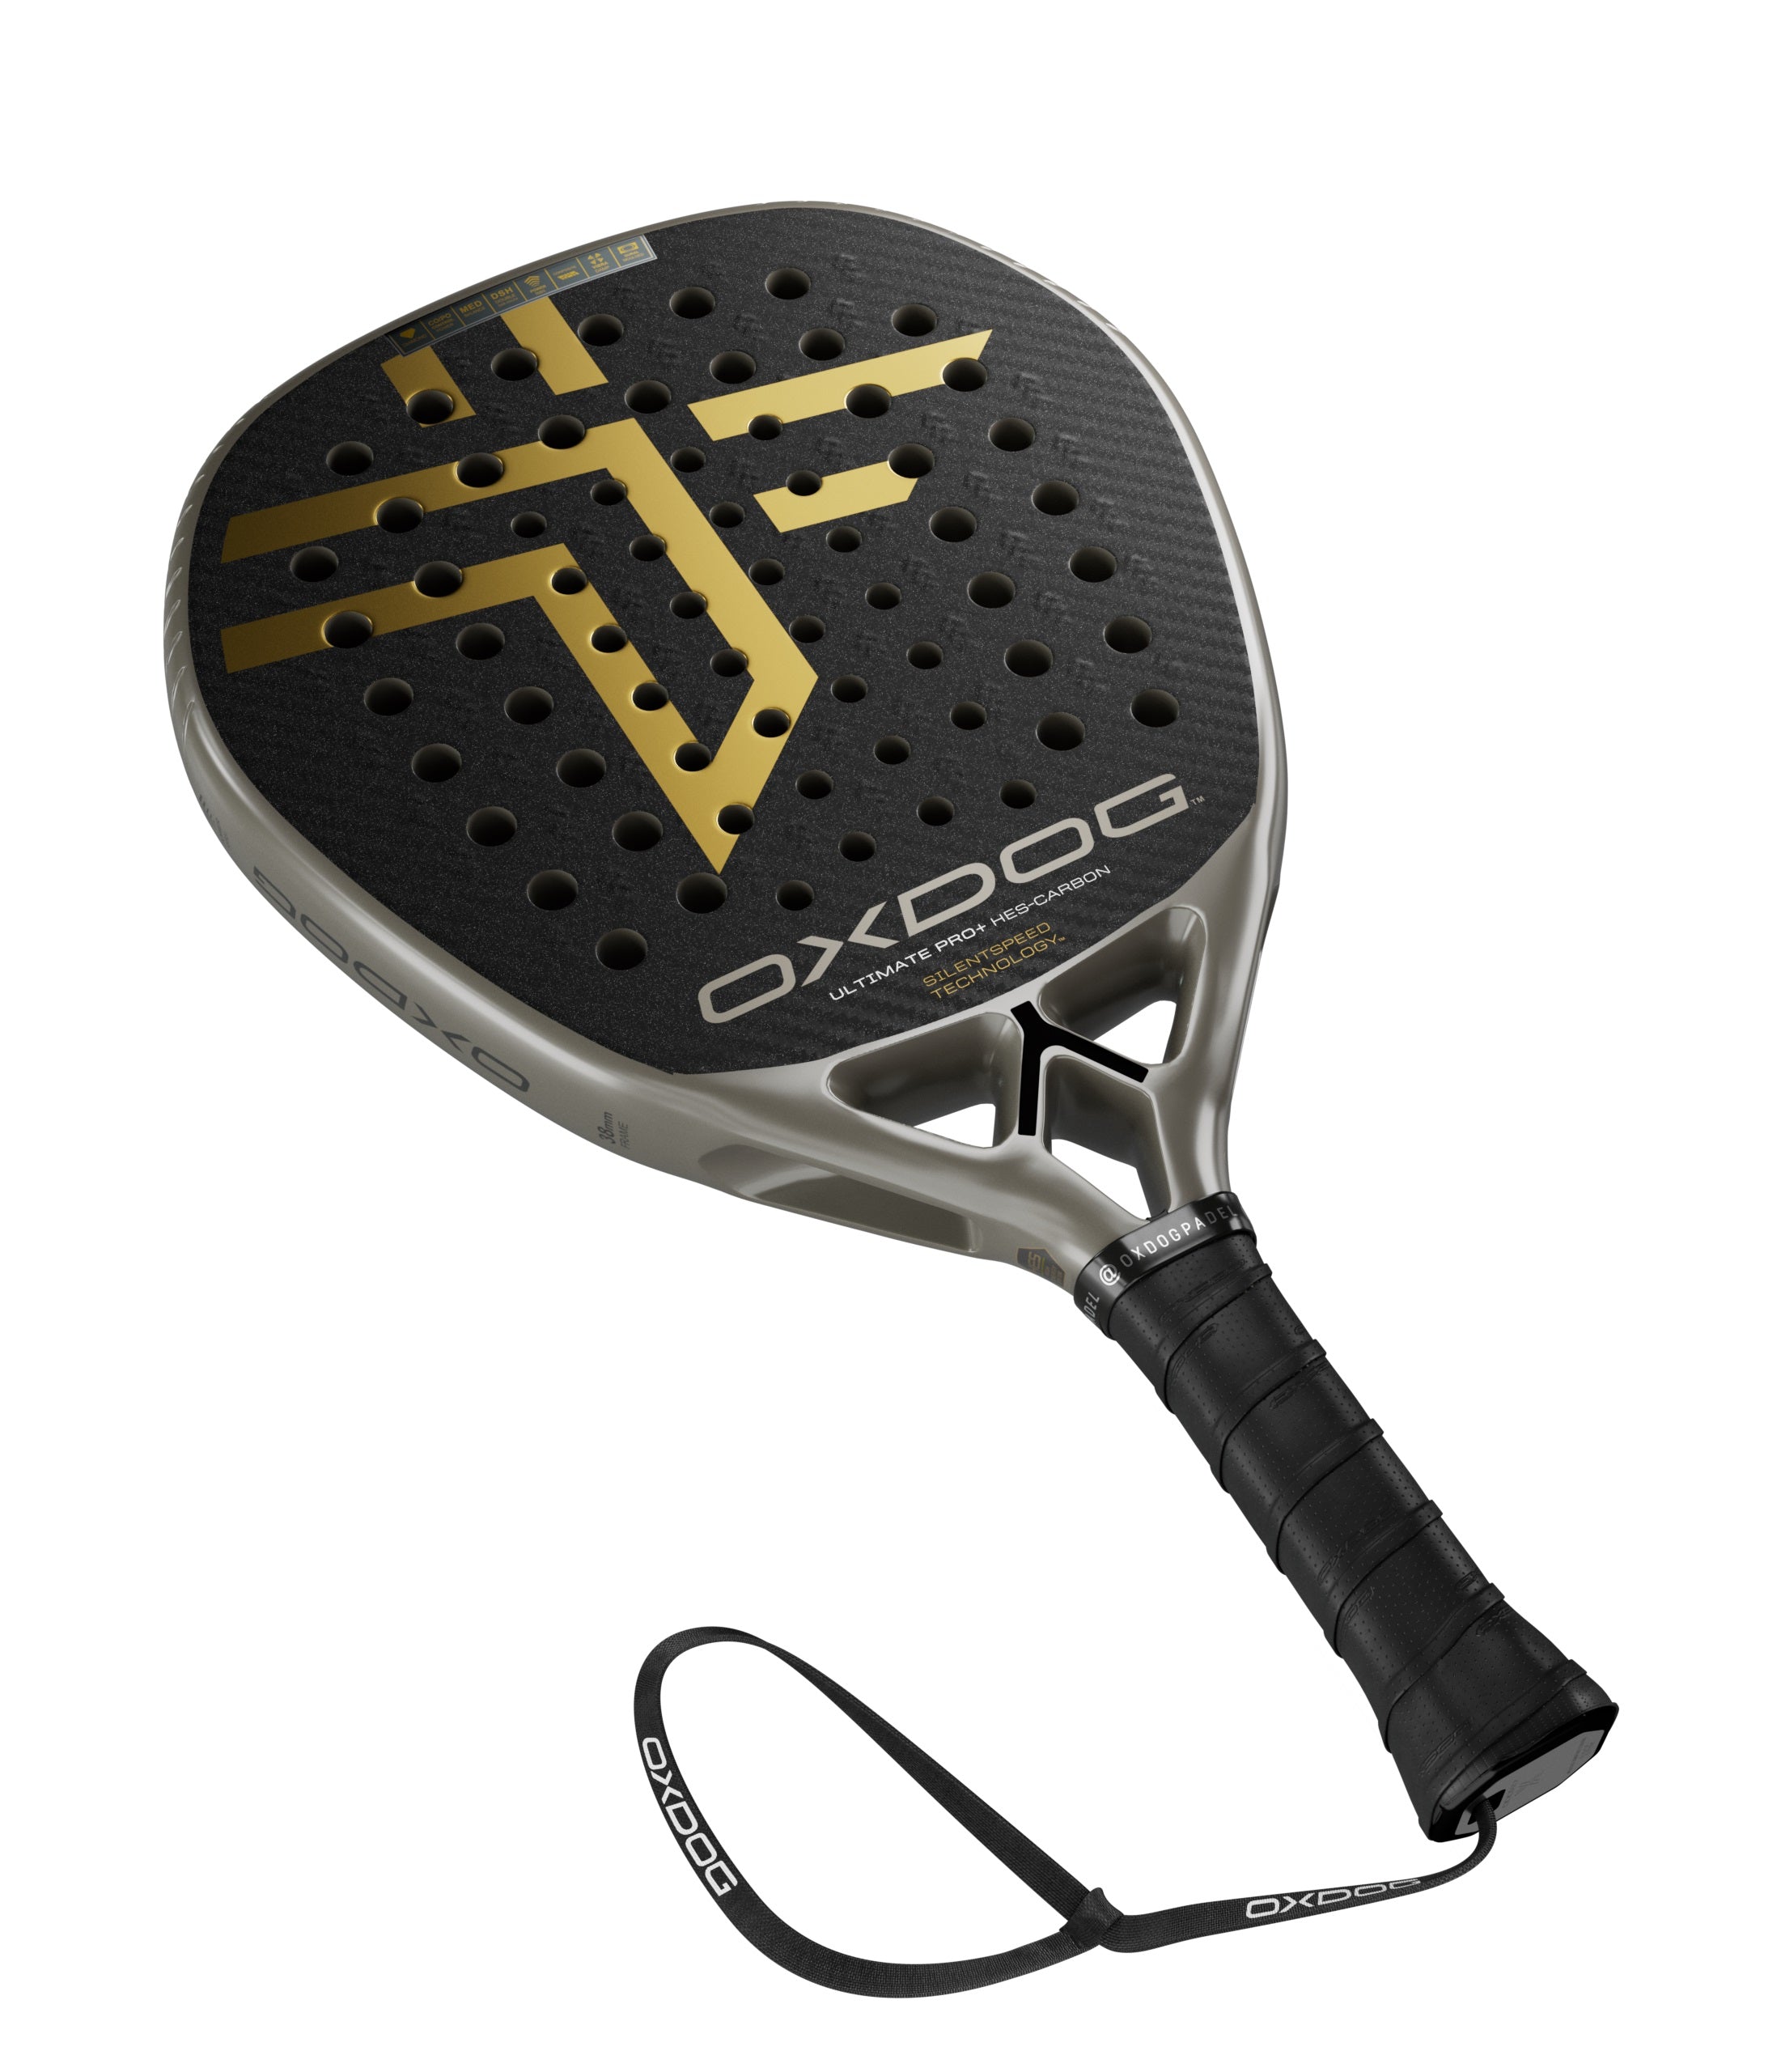 Oxdog Ultimate Pro+ 2024 Padel Racket